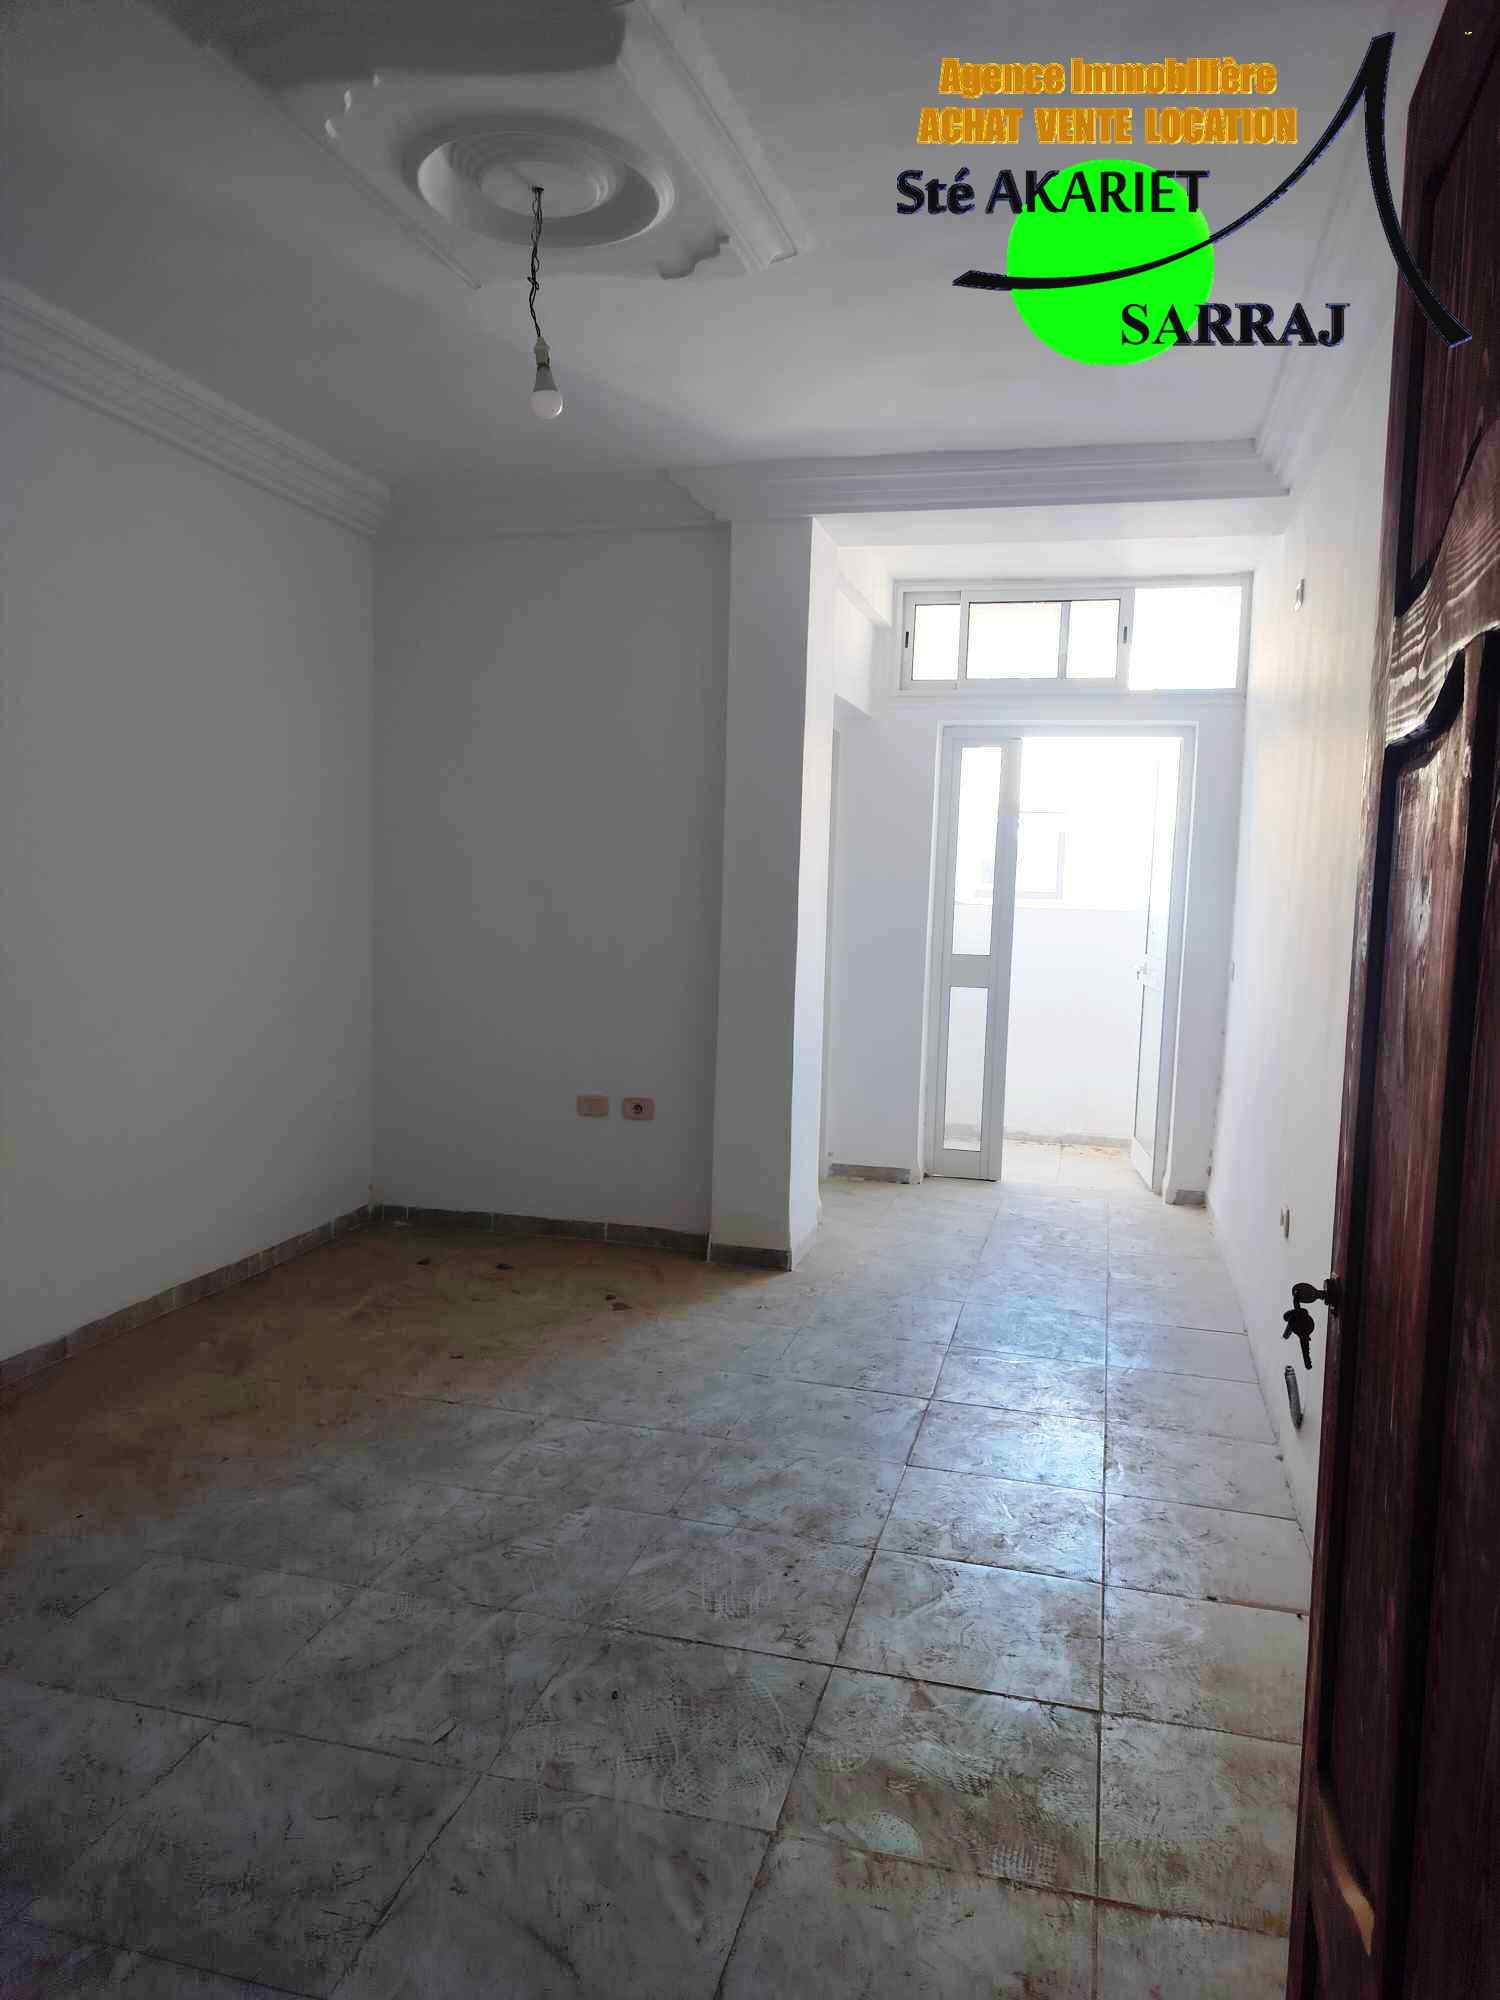 Hammam Sousse Hammam Sousse Gharbi Vente Appart. 2 pices Appartements neuf et jamais habit  hammem sousse